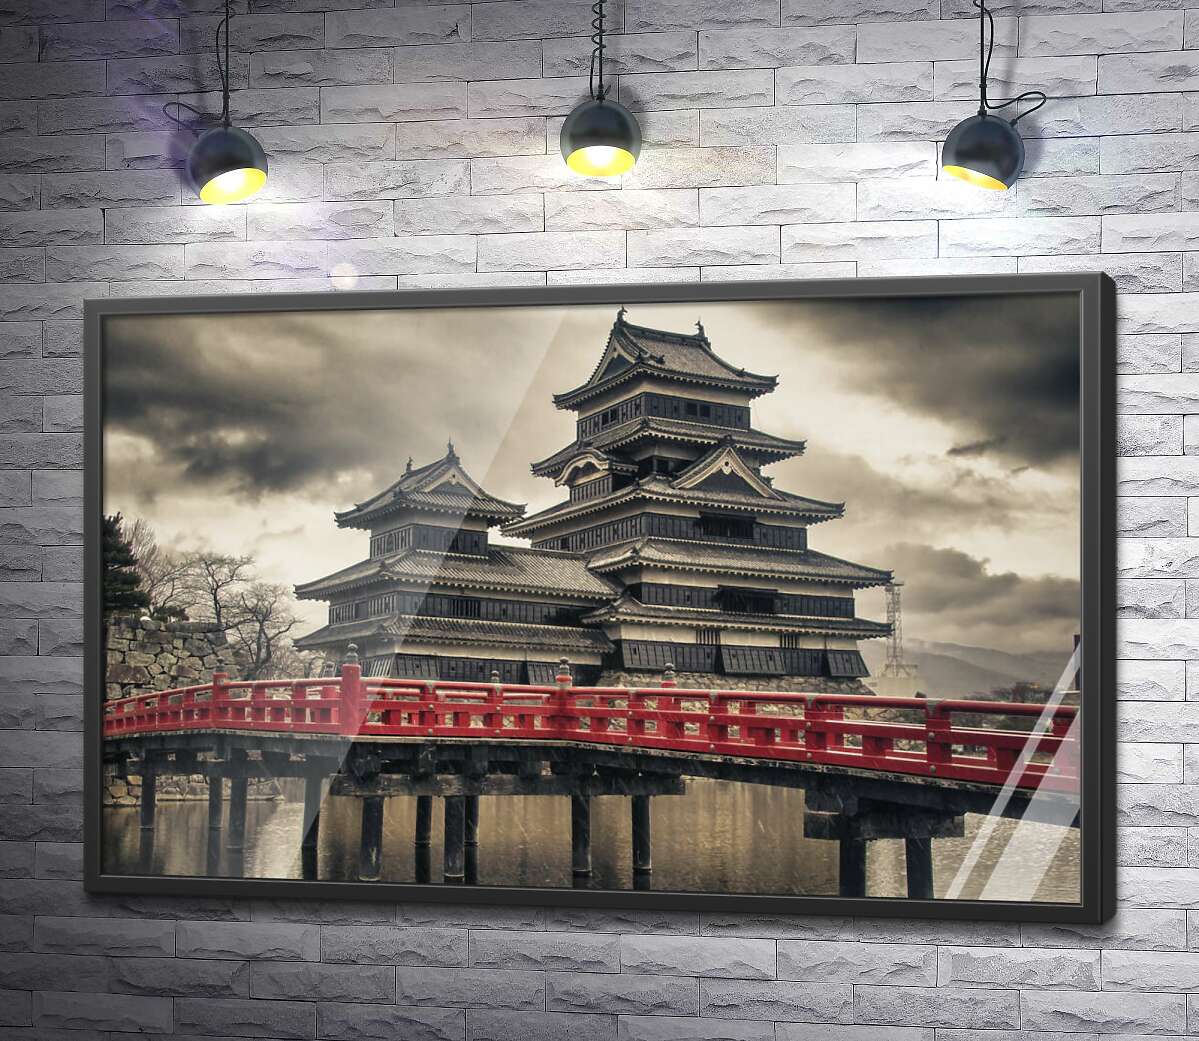 постер Дорога до японського замку ворона - Мацумото (Matsumoto)